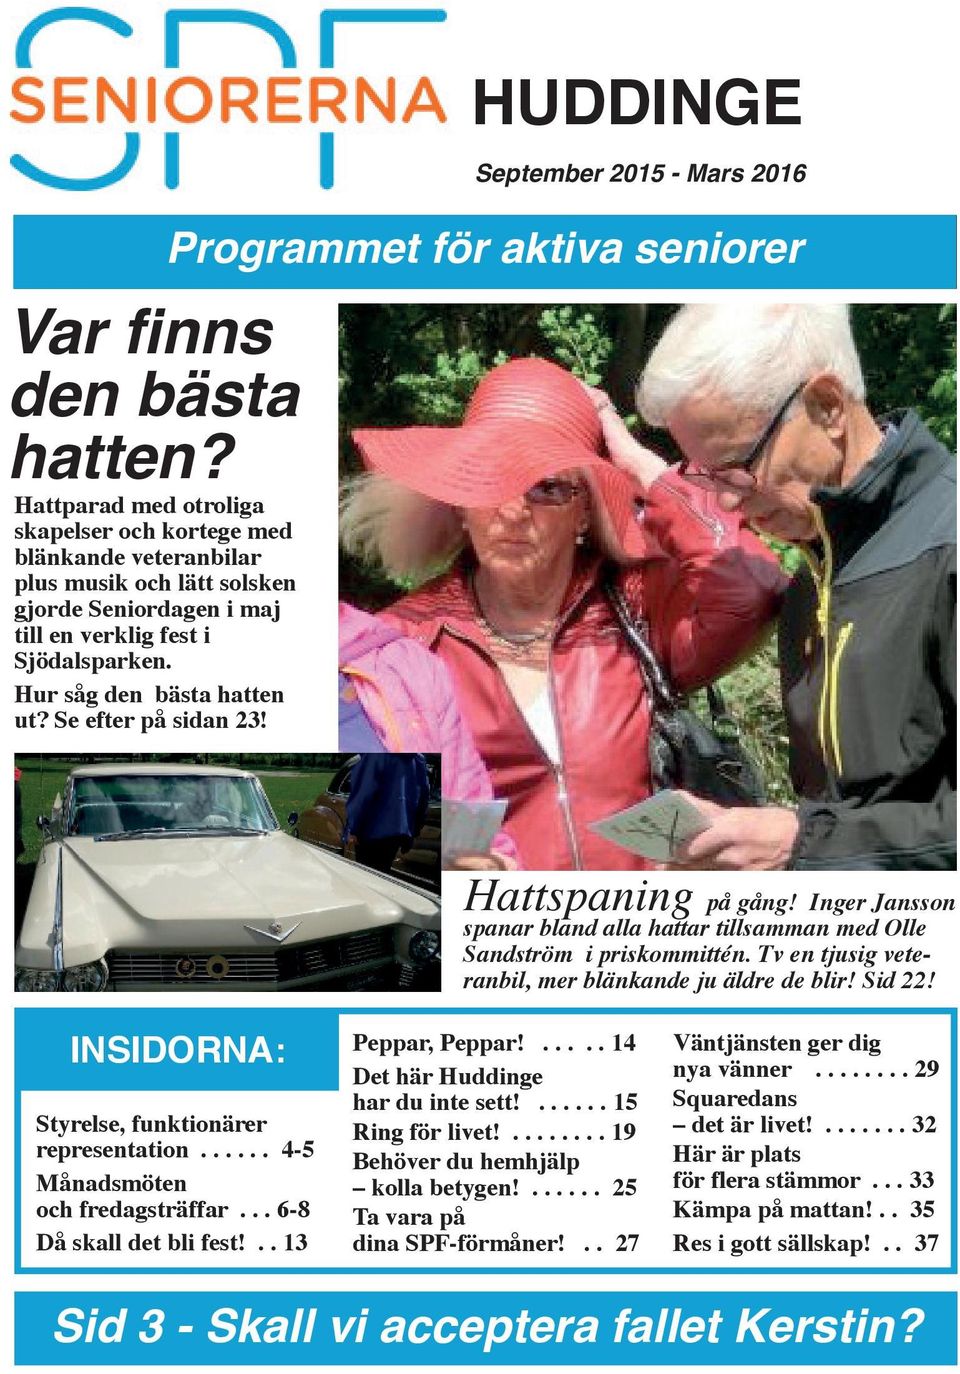 Se efter på sidan 23! September 2015 - Mars 2016 Hattspaning på gång! Inger Jansson spanar bland alla hattar tillsamman med Olle Sandström i priskommittén.